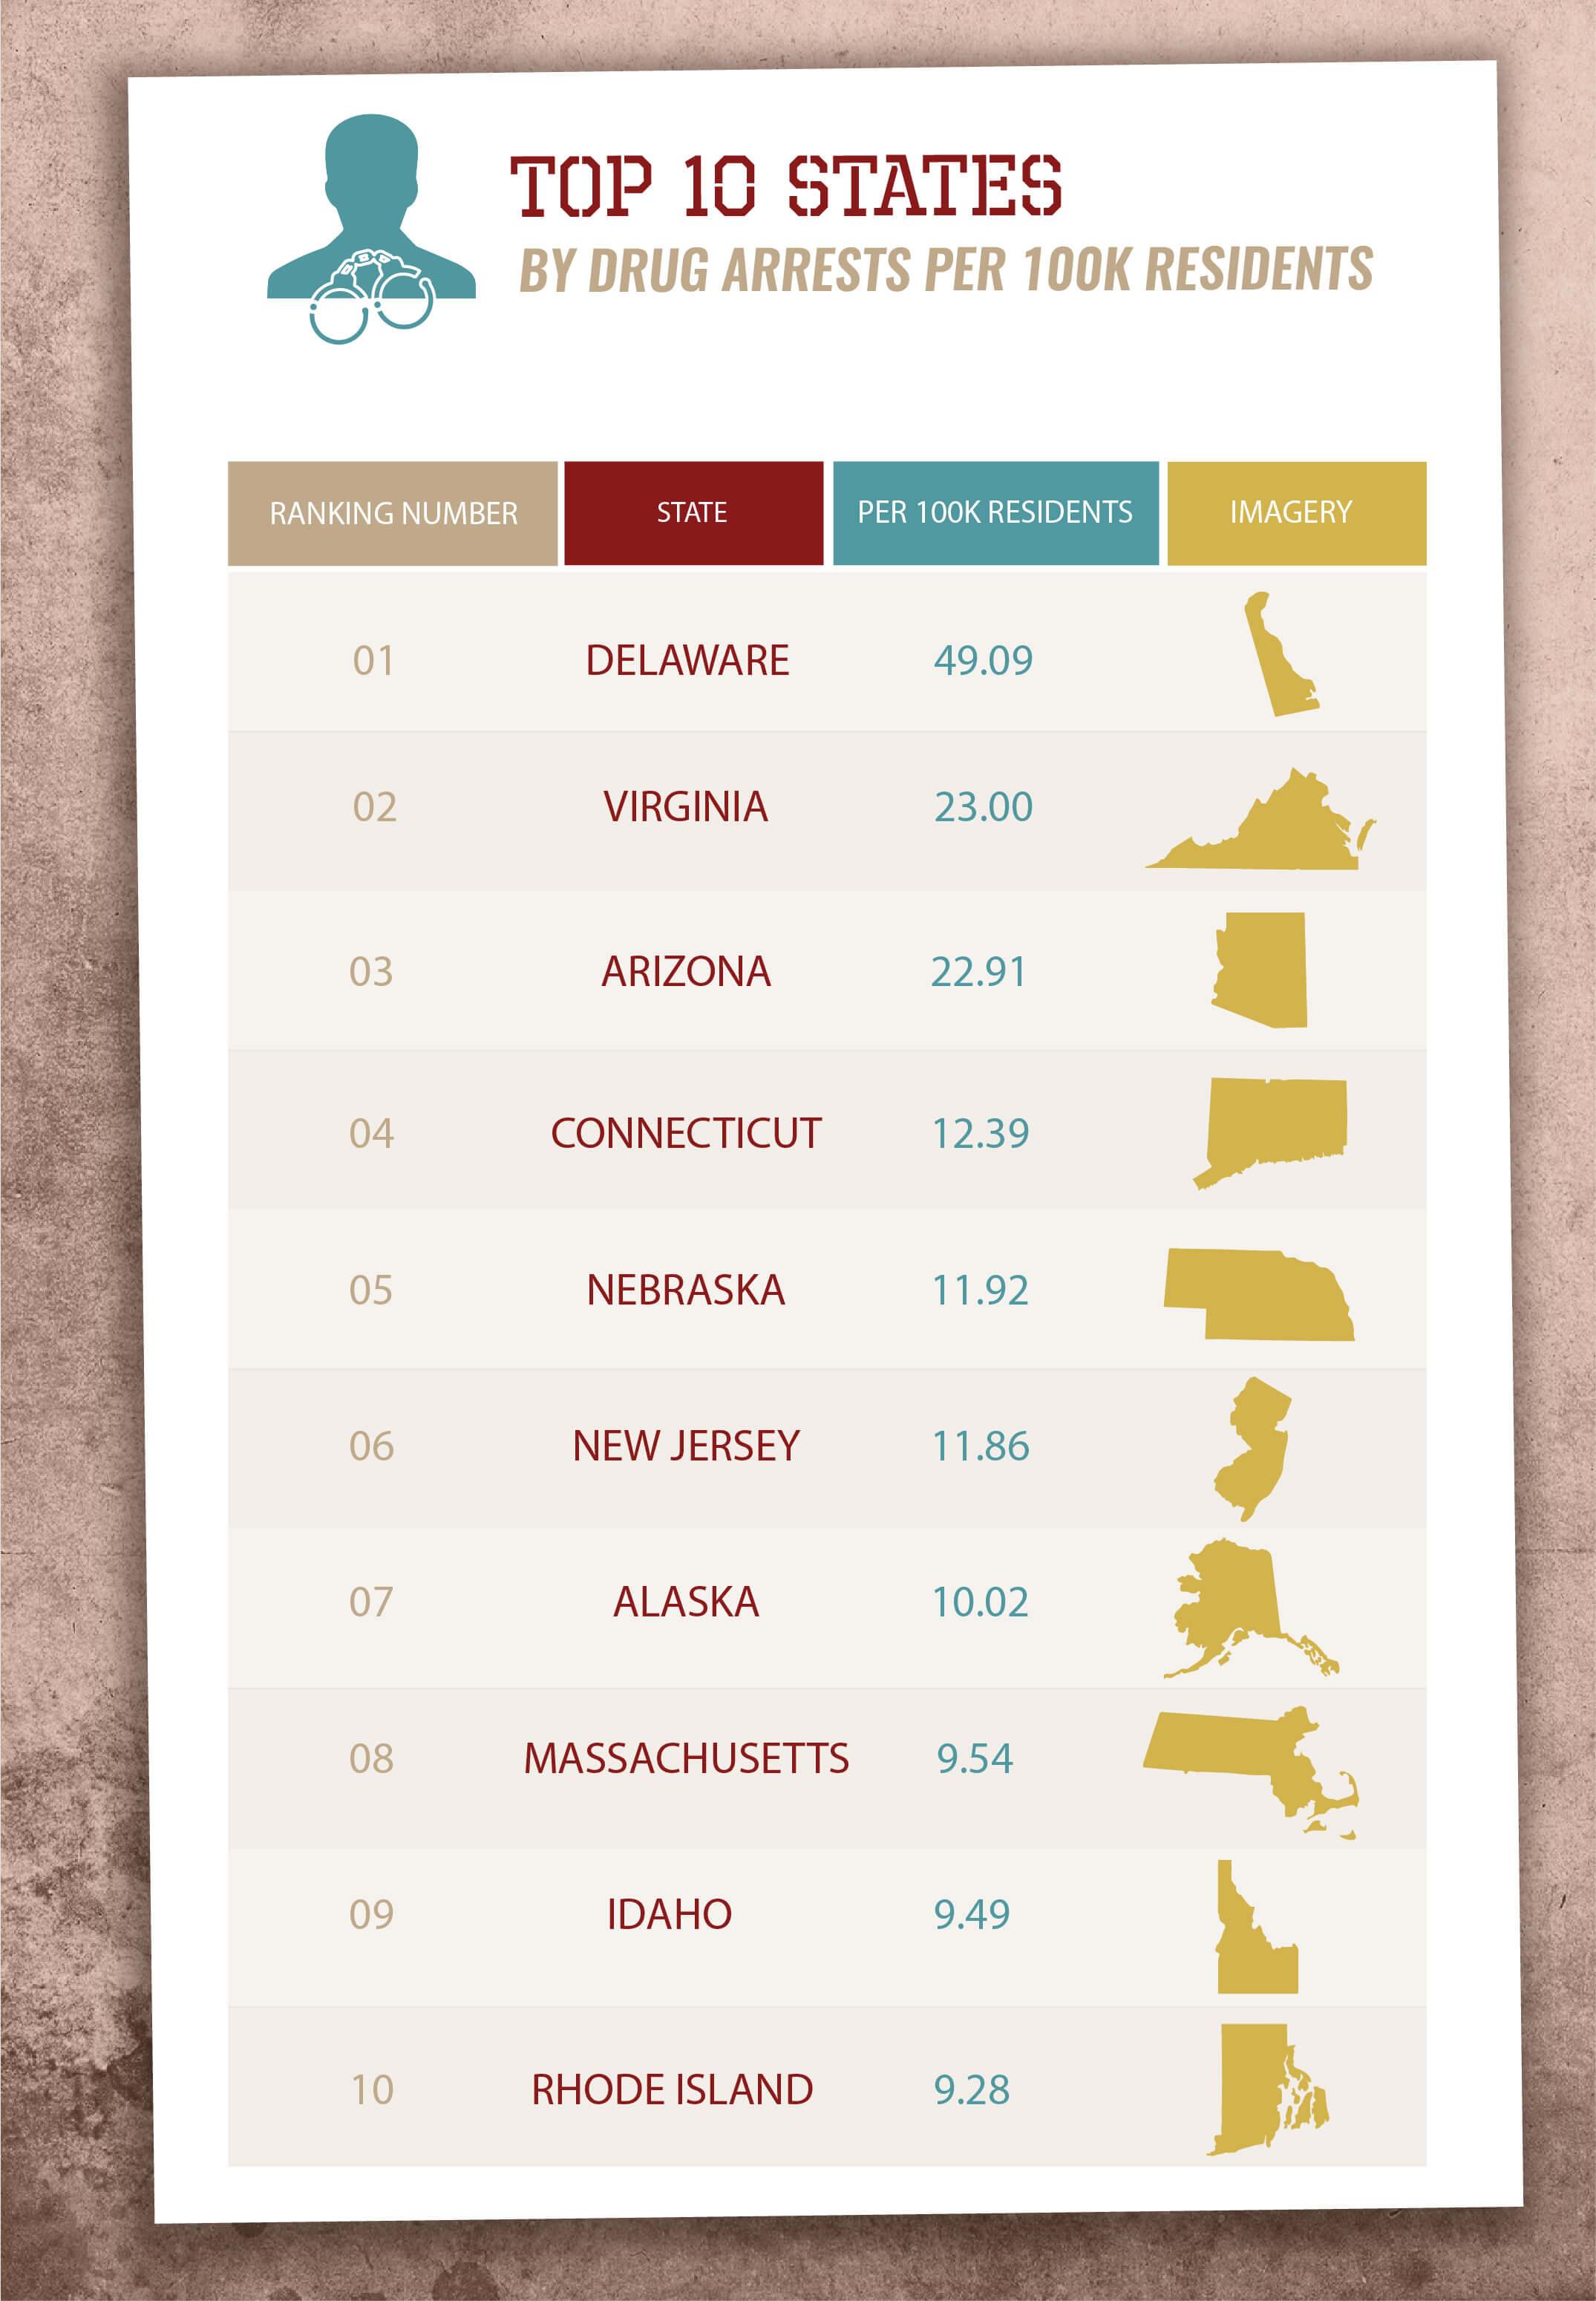 Top 10 States for Drug Arrests